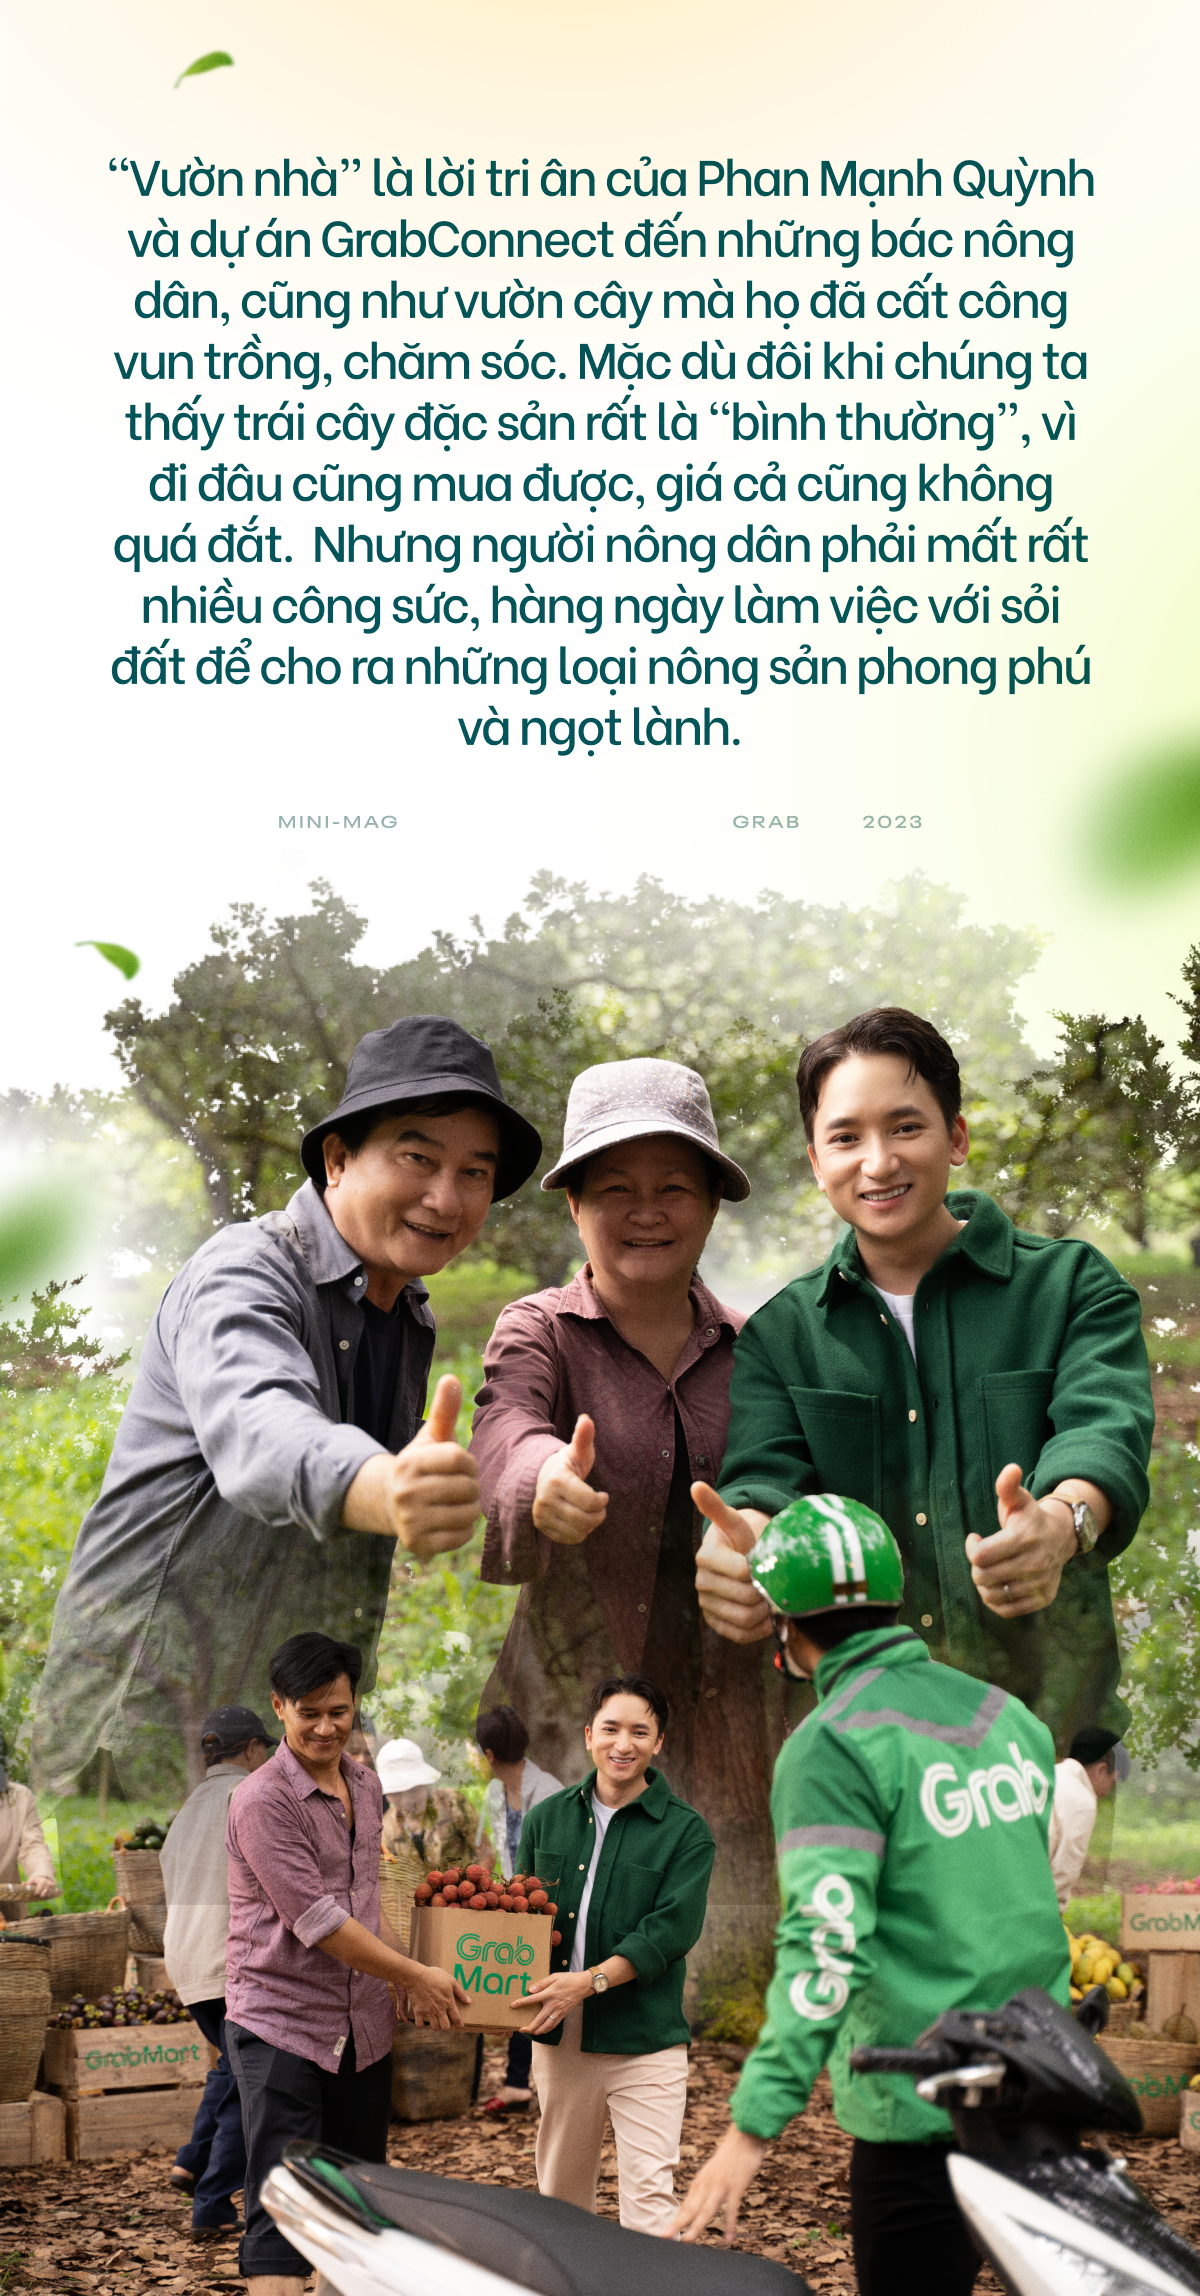 Bồi hồi với Vườn Nhà - Bài hát đầu tiên Phan Mạnh Quỳnh sáng tác về người nông dân - Ảnh 5.